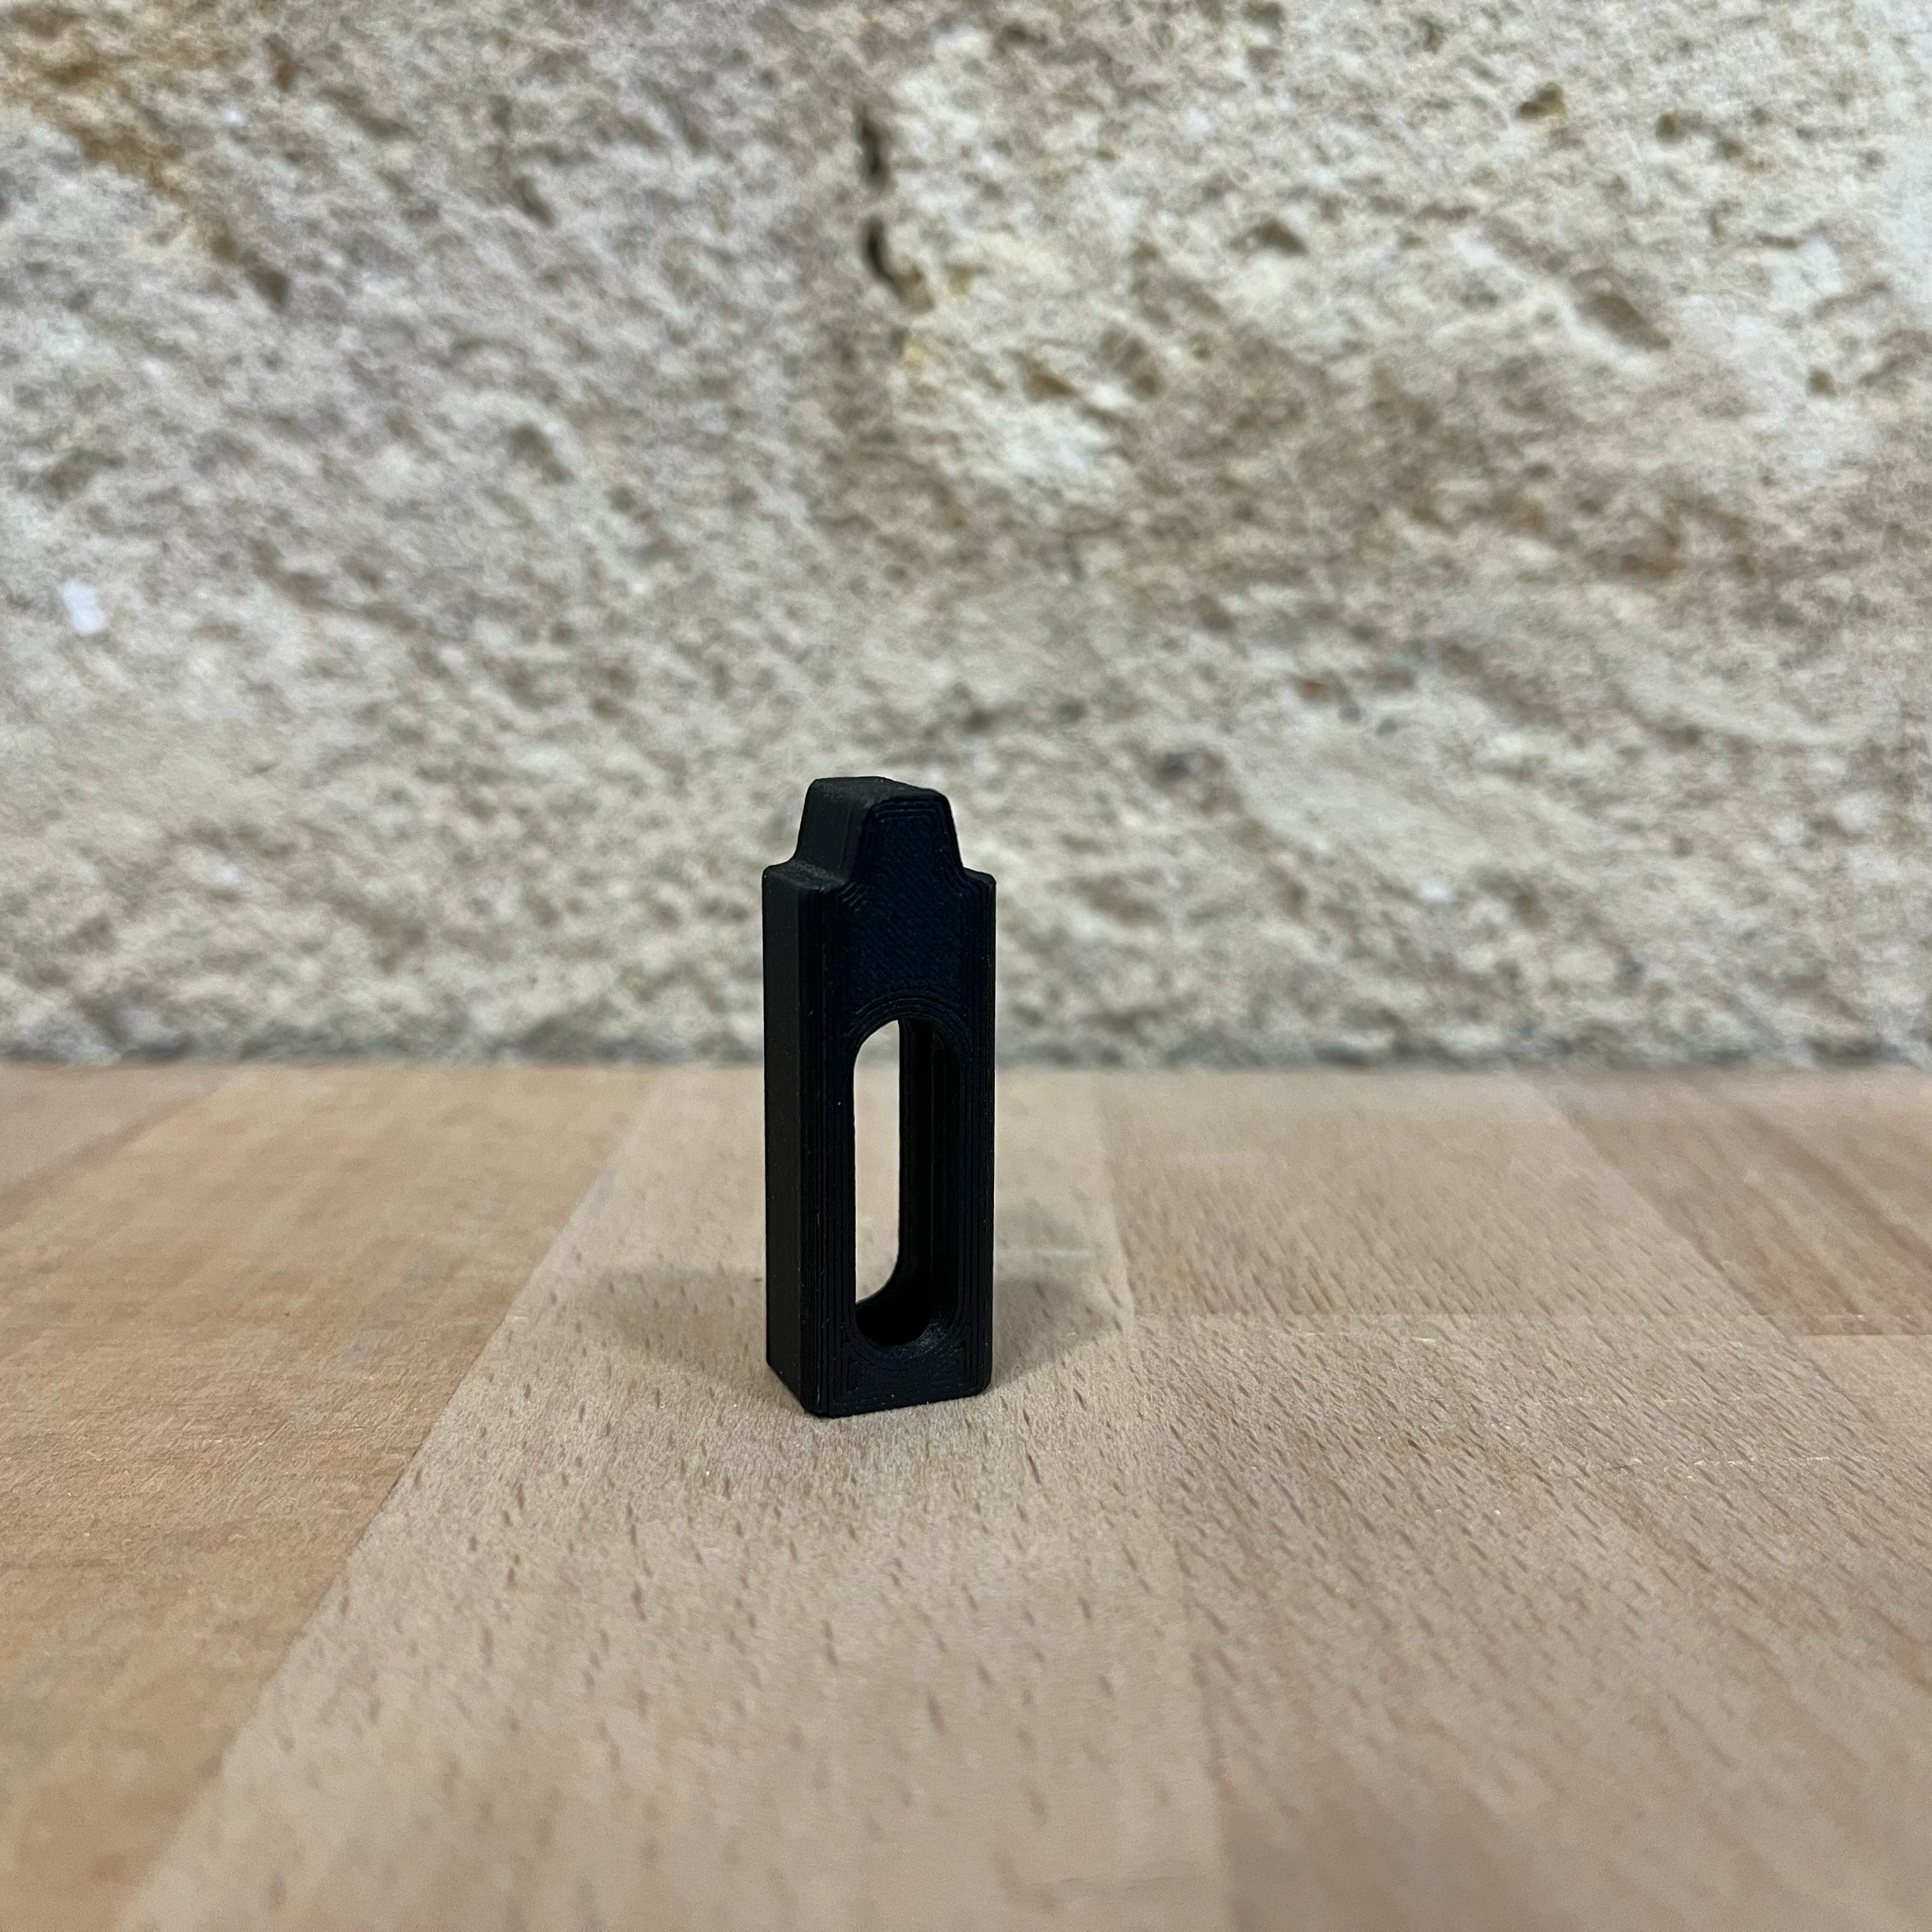 Pièce détachée imprimée en 3D